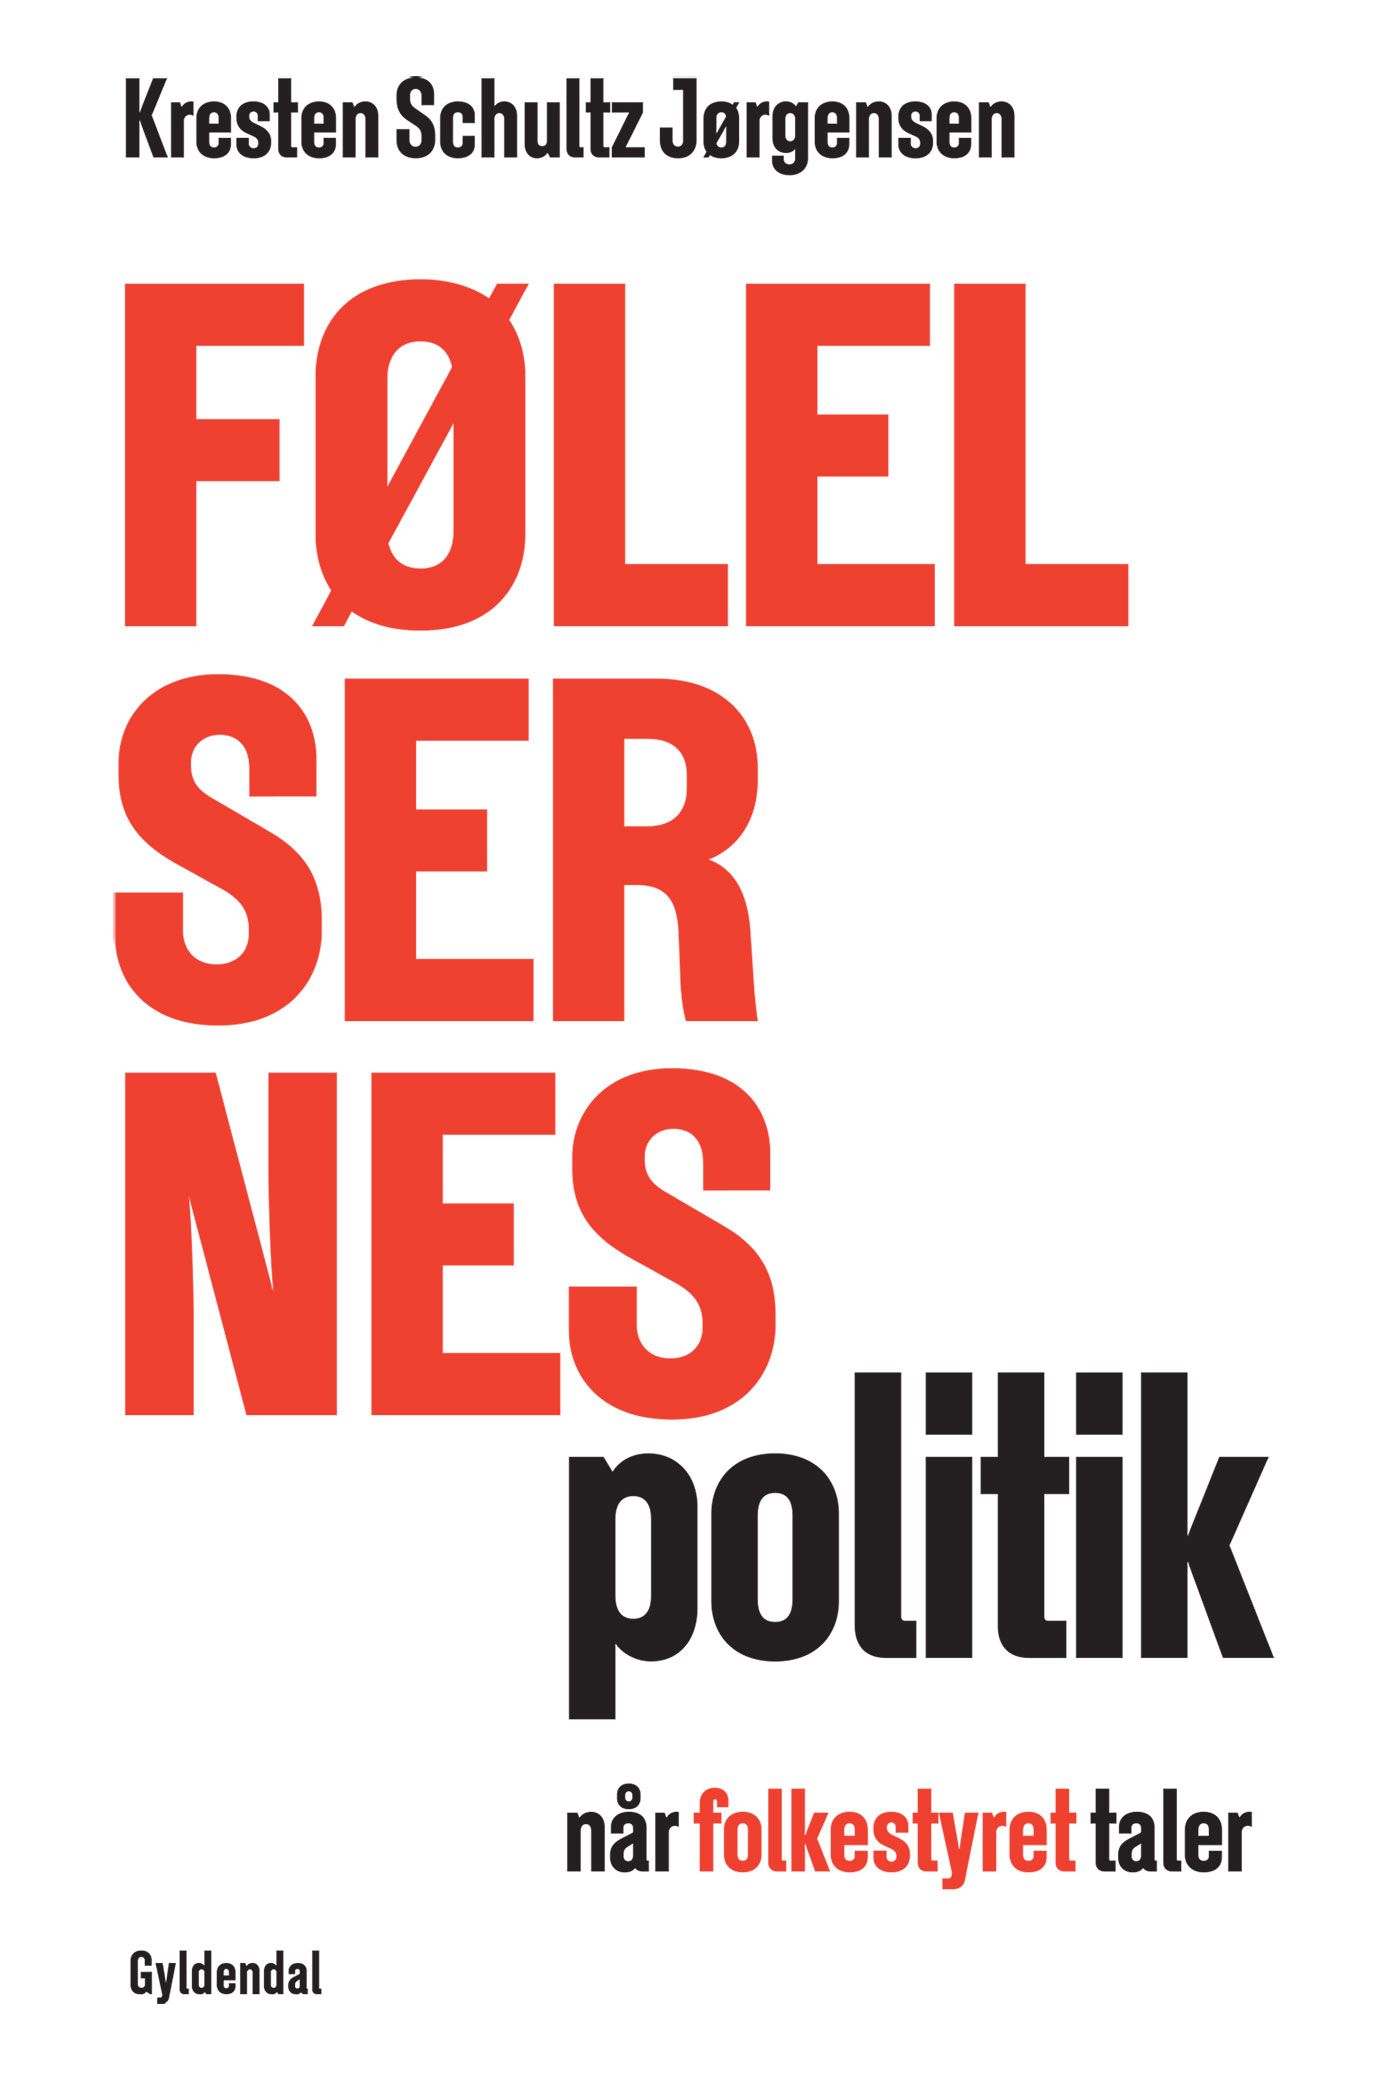 Følelsernes politik, e-bog af Kresten Schultz Jørgensen